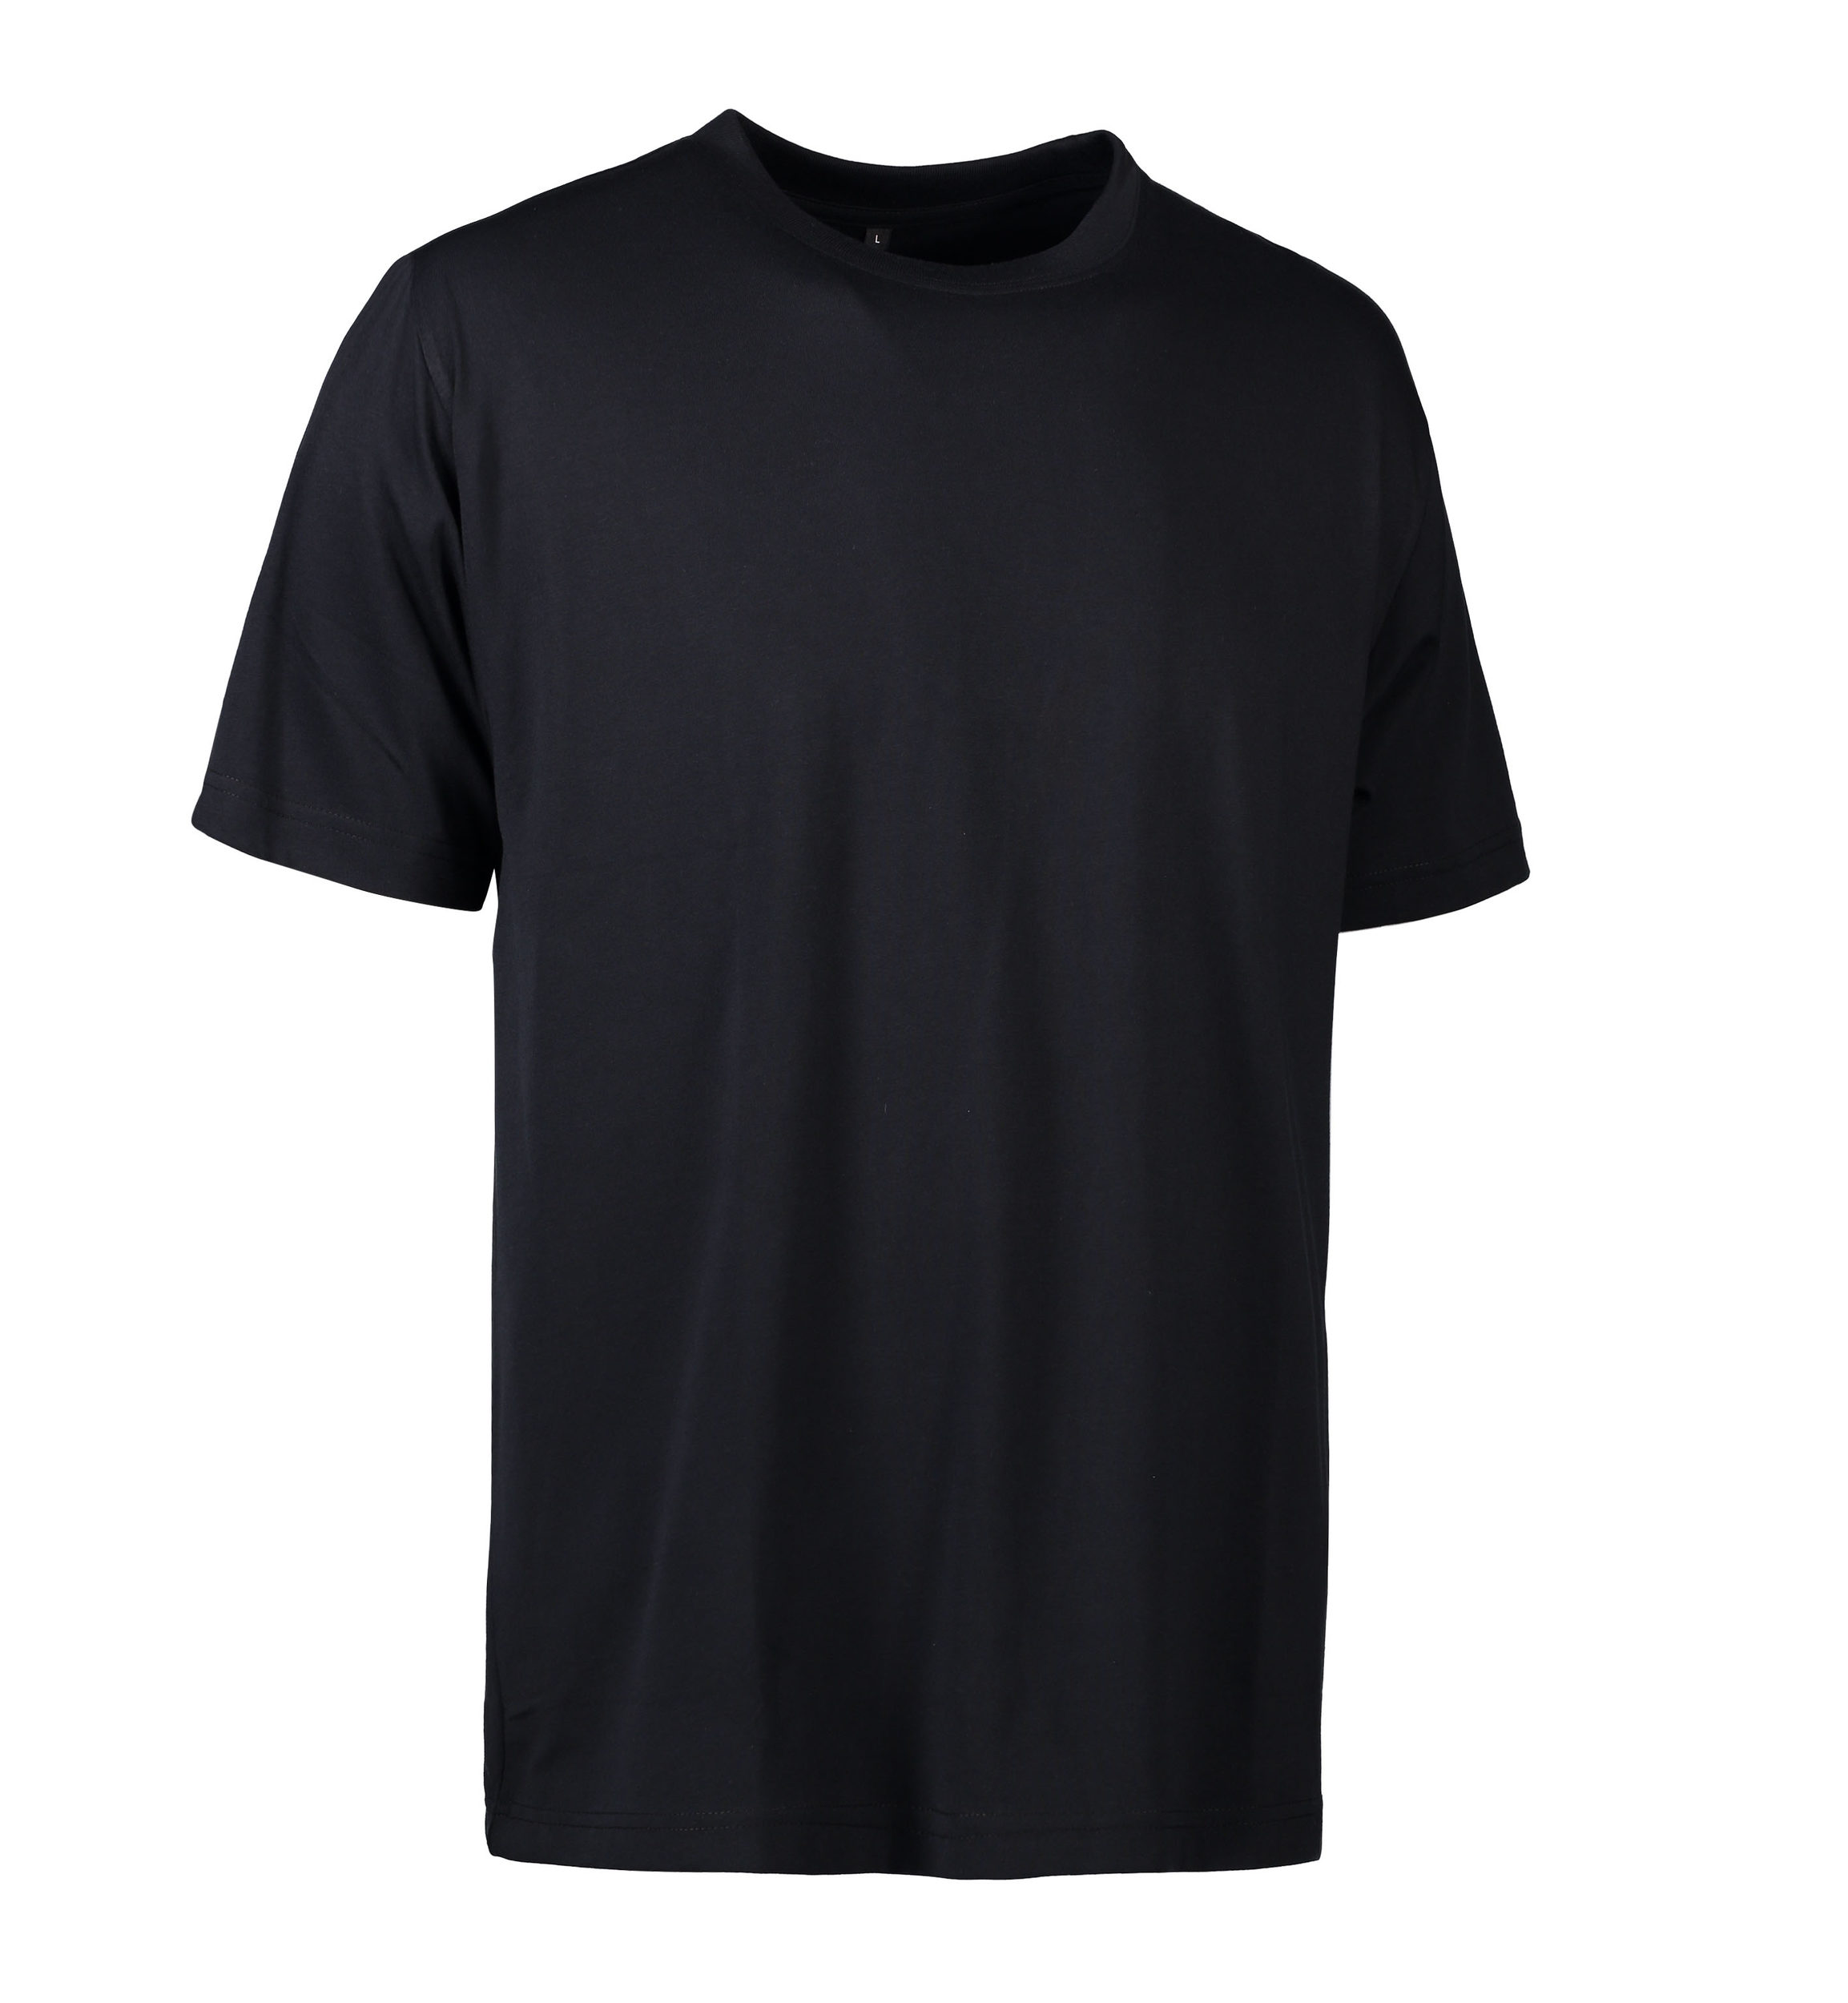 Se Slidstærk t-shirt i sort til mænd - M hos Sygeplejebutikken.dk